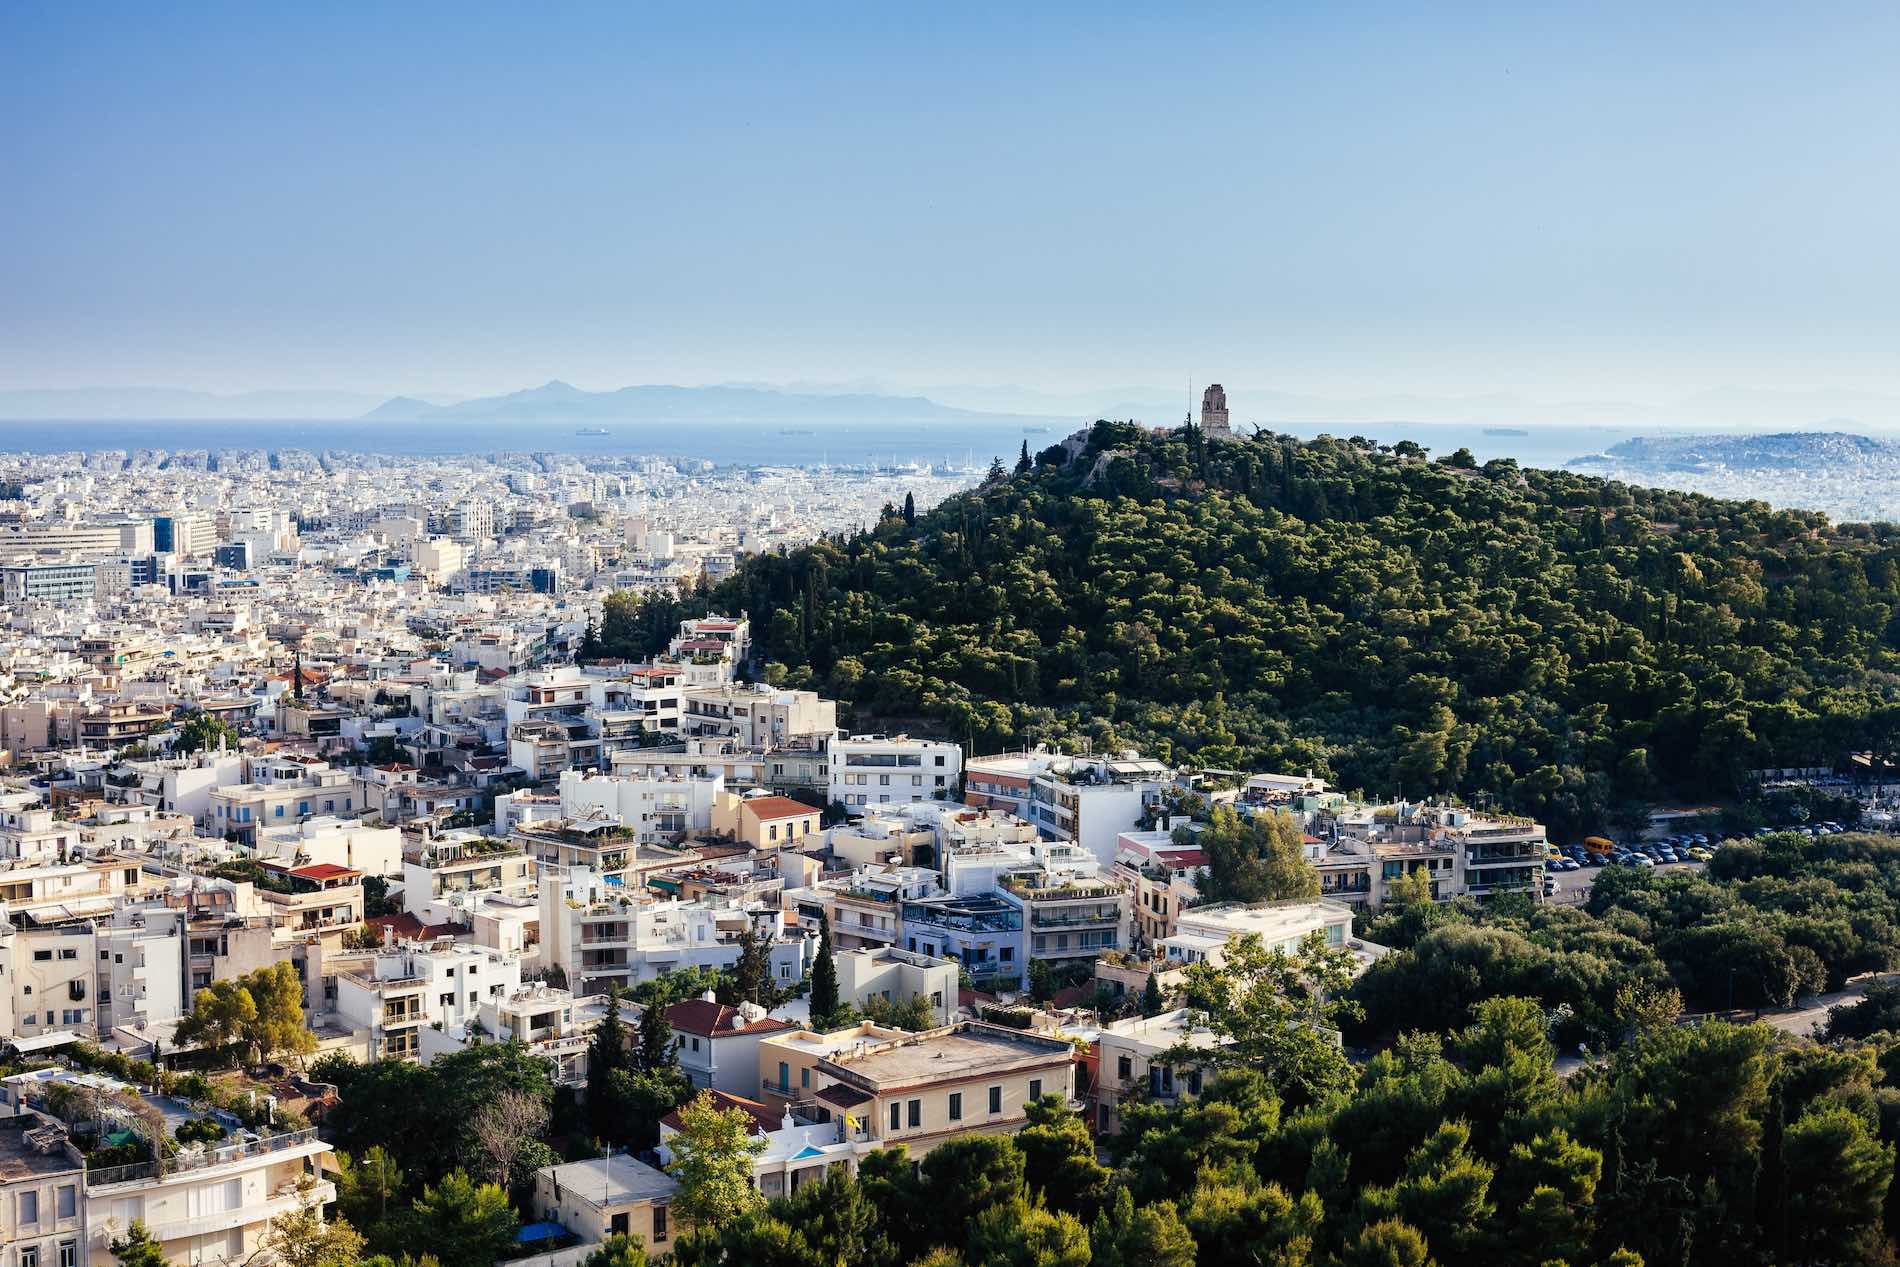 Αθήνα 2019: Ο Γύρος της Ευρώπης σε 5 Φωτογραφίες | αθηΝΕΑ